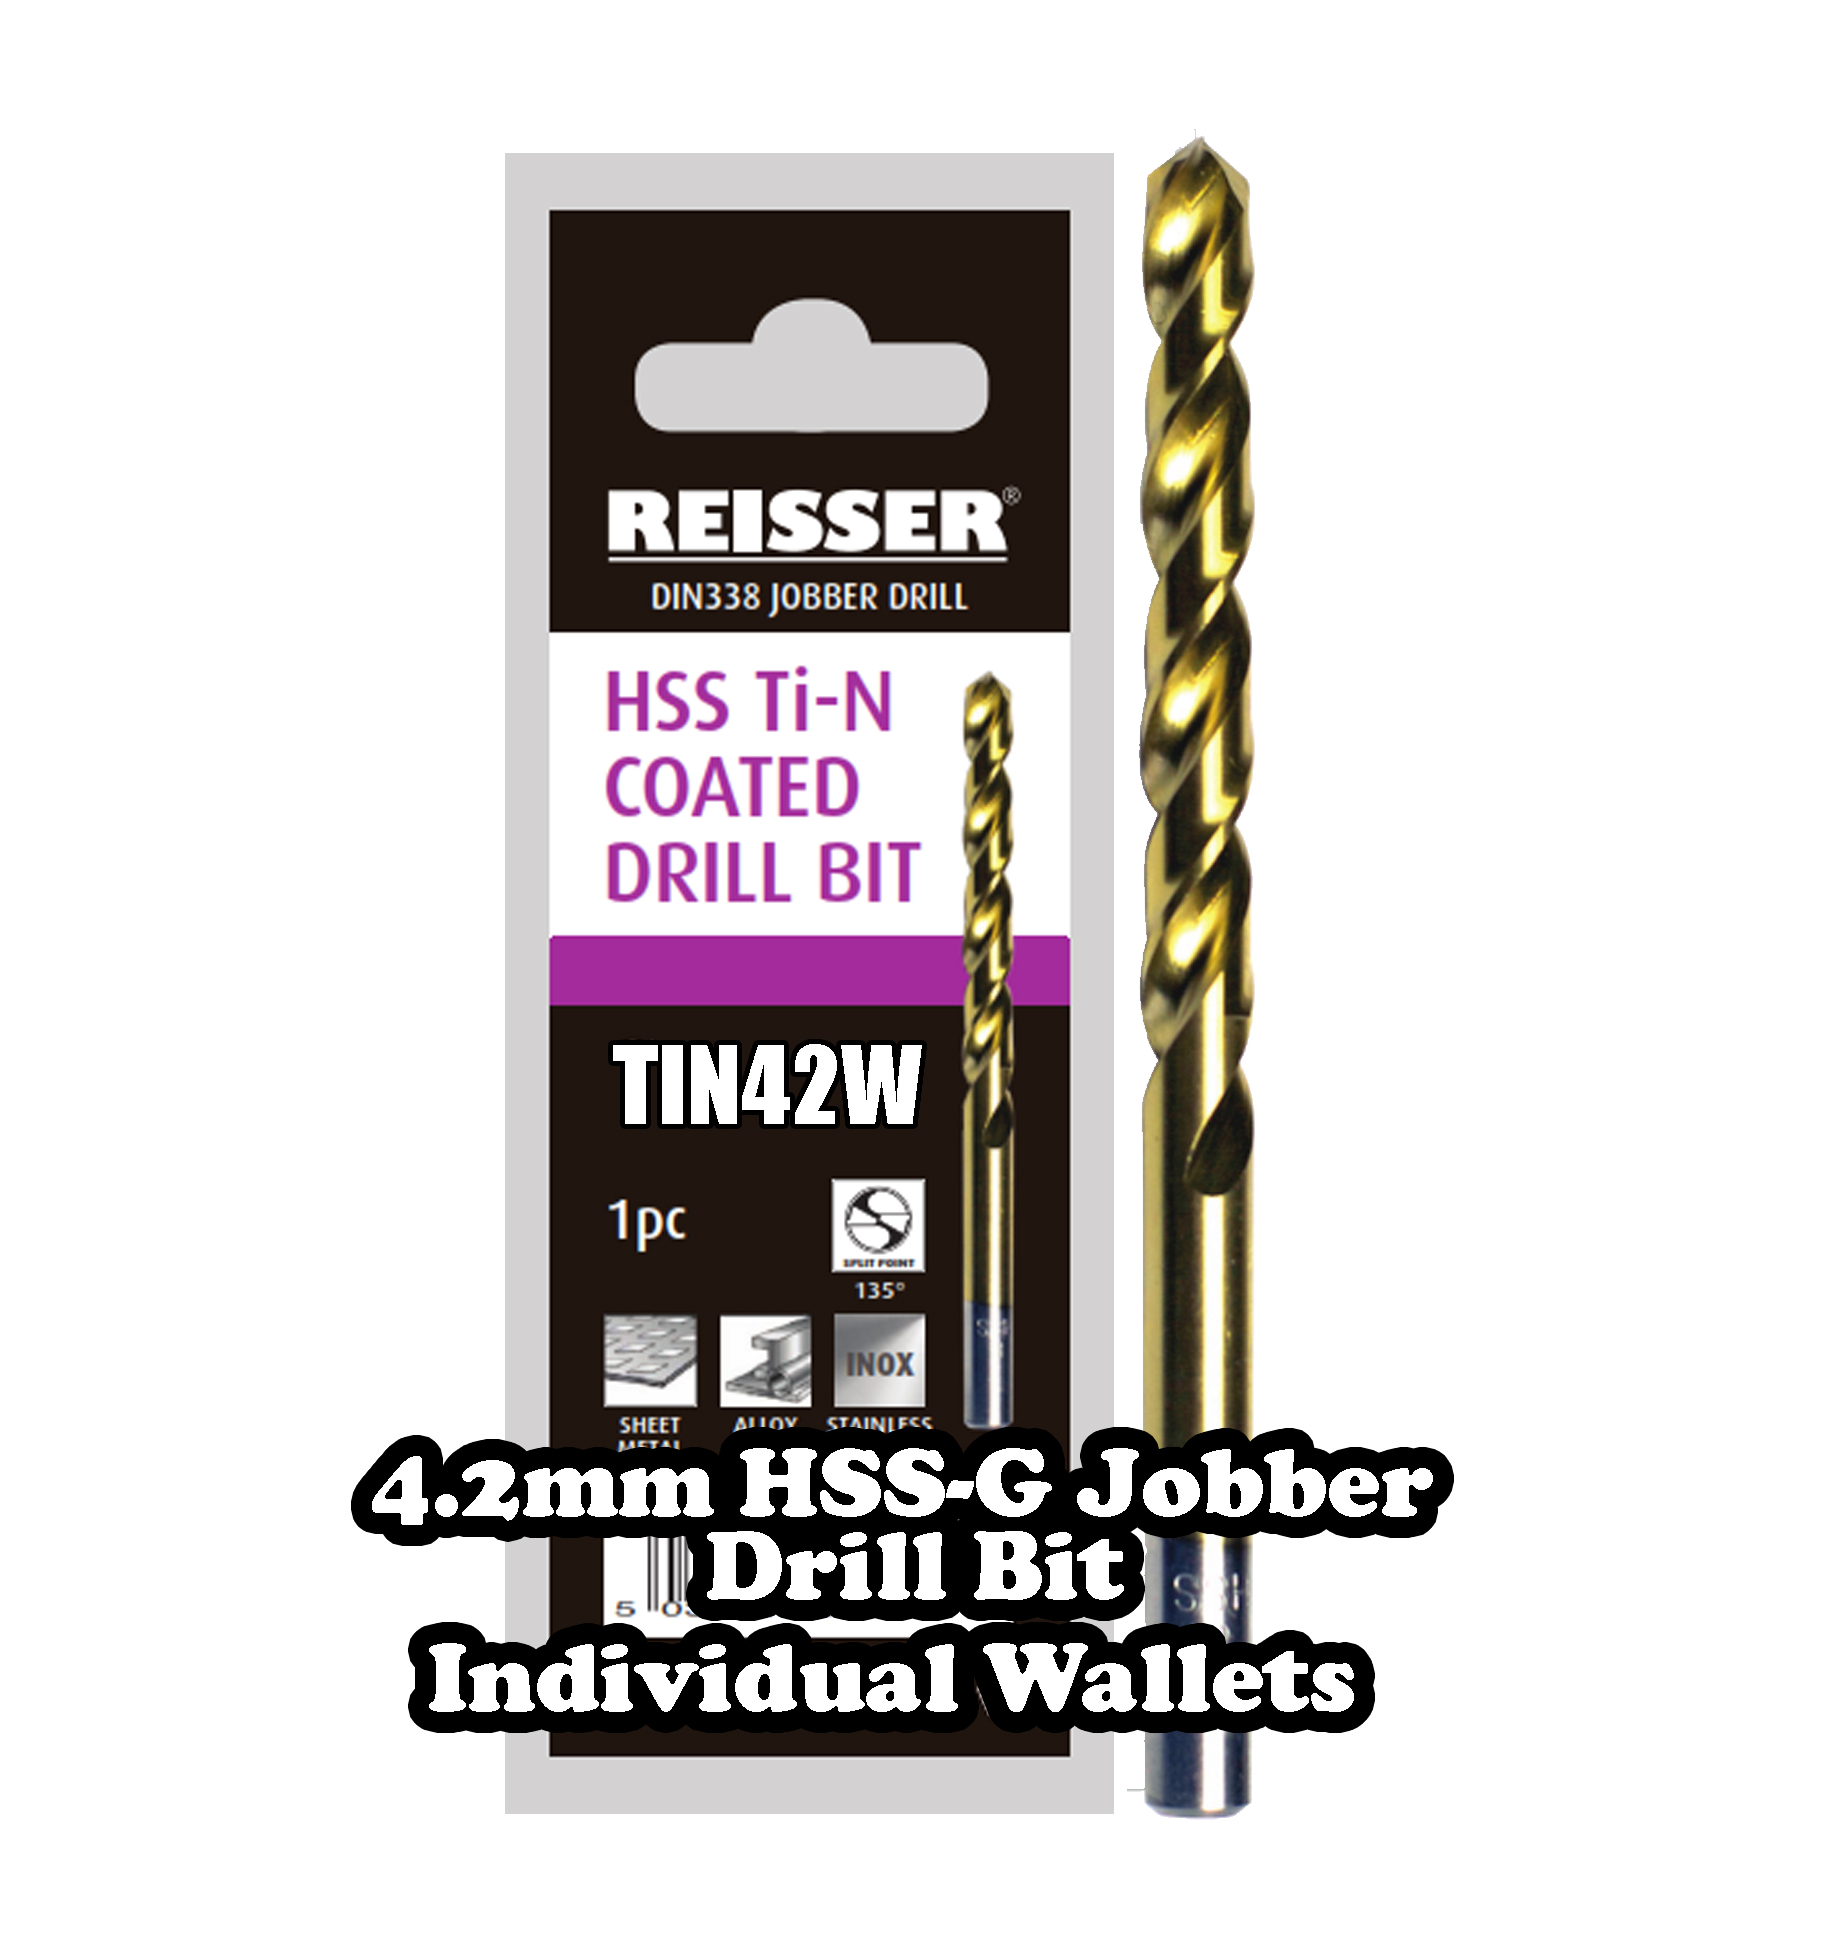 4.2mm HSS Jobber Drill Bit (SINGLE WALLET)